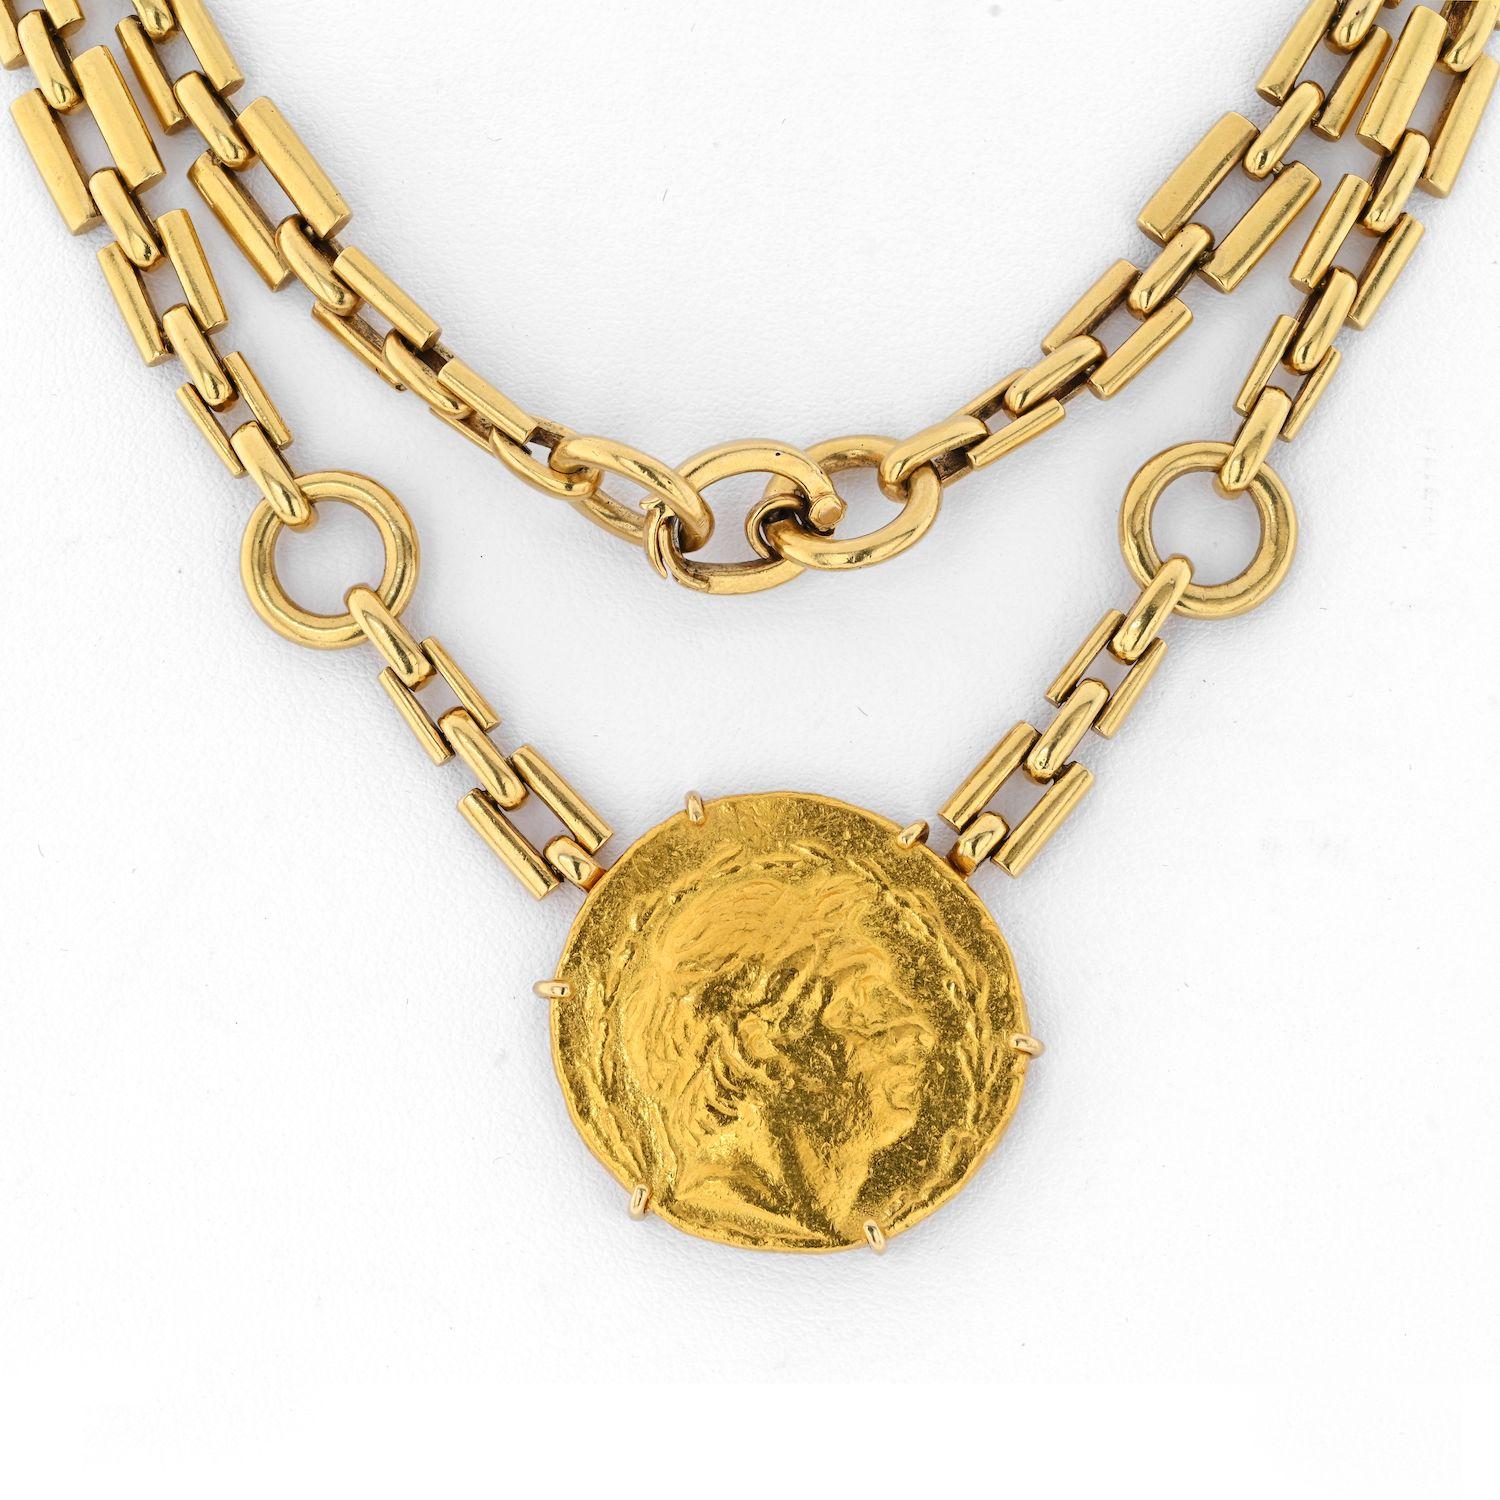 Aus antiken griechischen Goldmünzen, einer großen in der Mitte und vier kleinen in der Kette, gefertigt, wird dieses David Webb-Schmuckstück mit Sicherheit zu Ihrem Lieblingsstück, sobald Sie es anlegen. 
Hergestellt in 18K Gelbgold die Kette